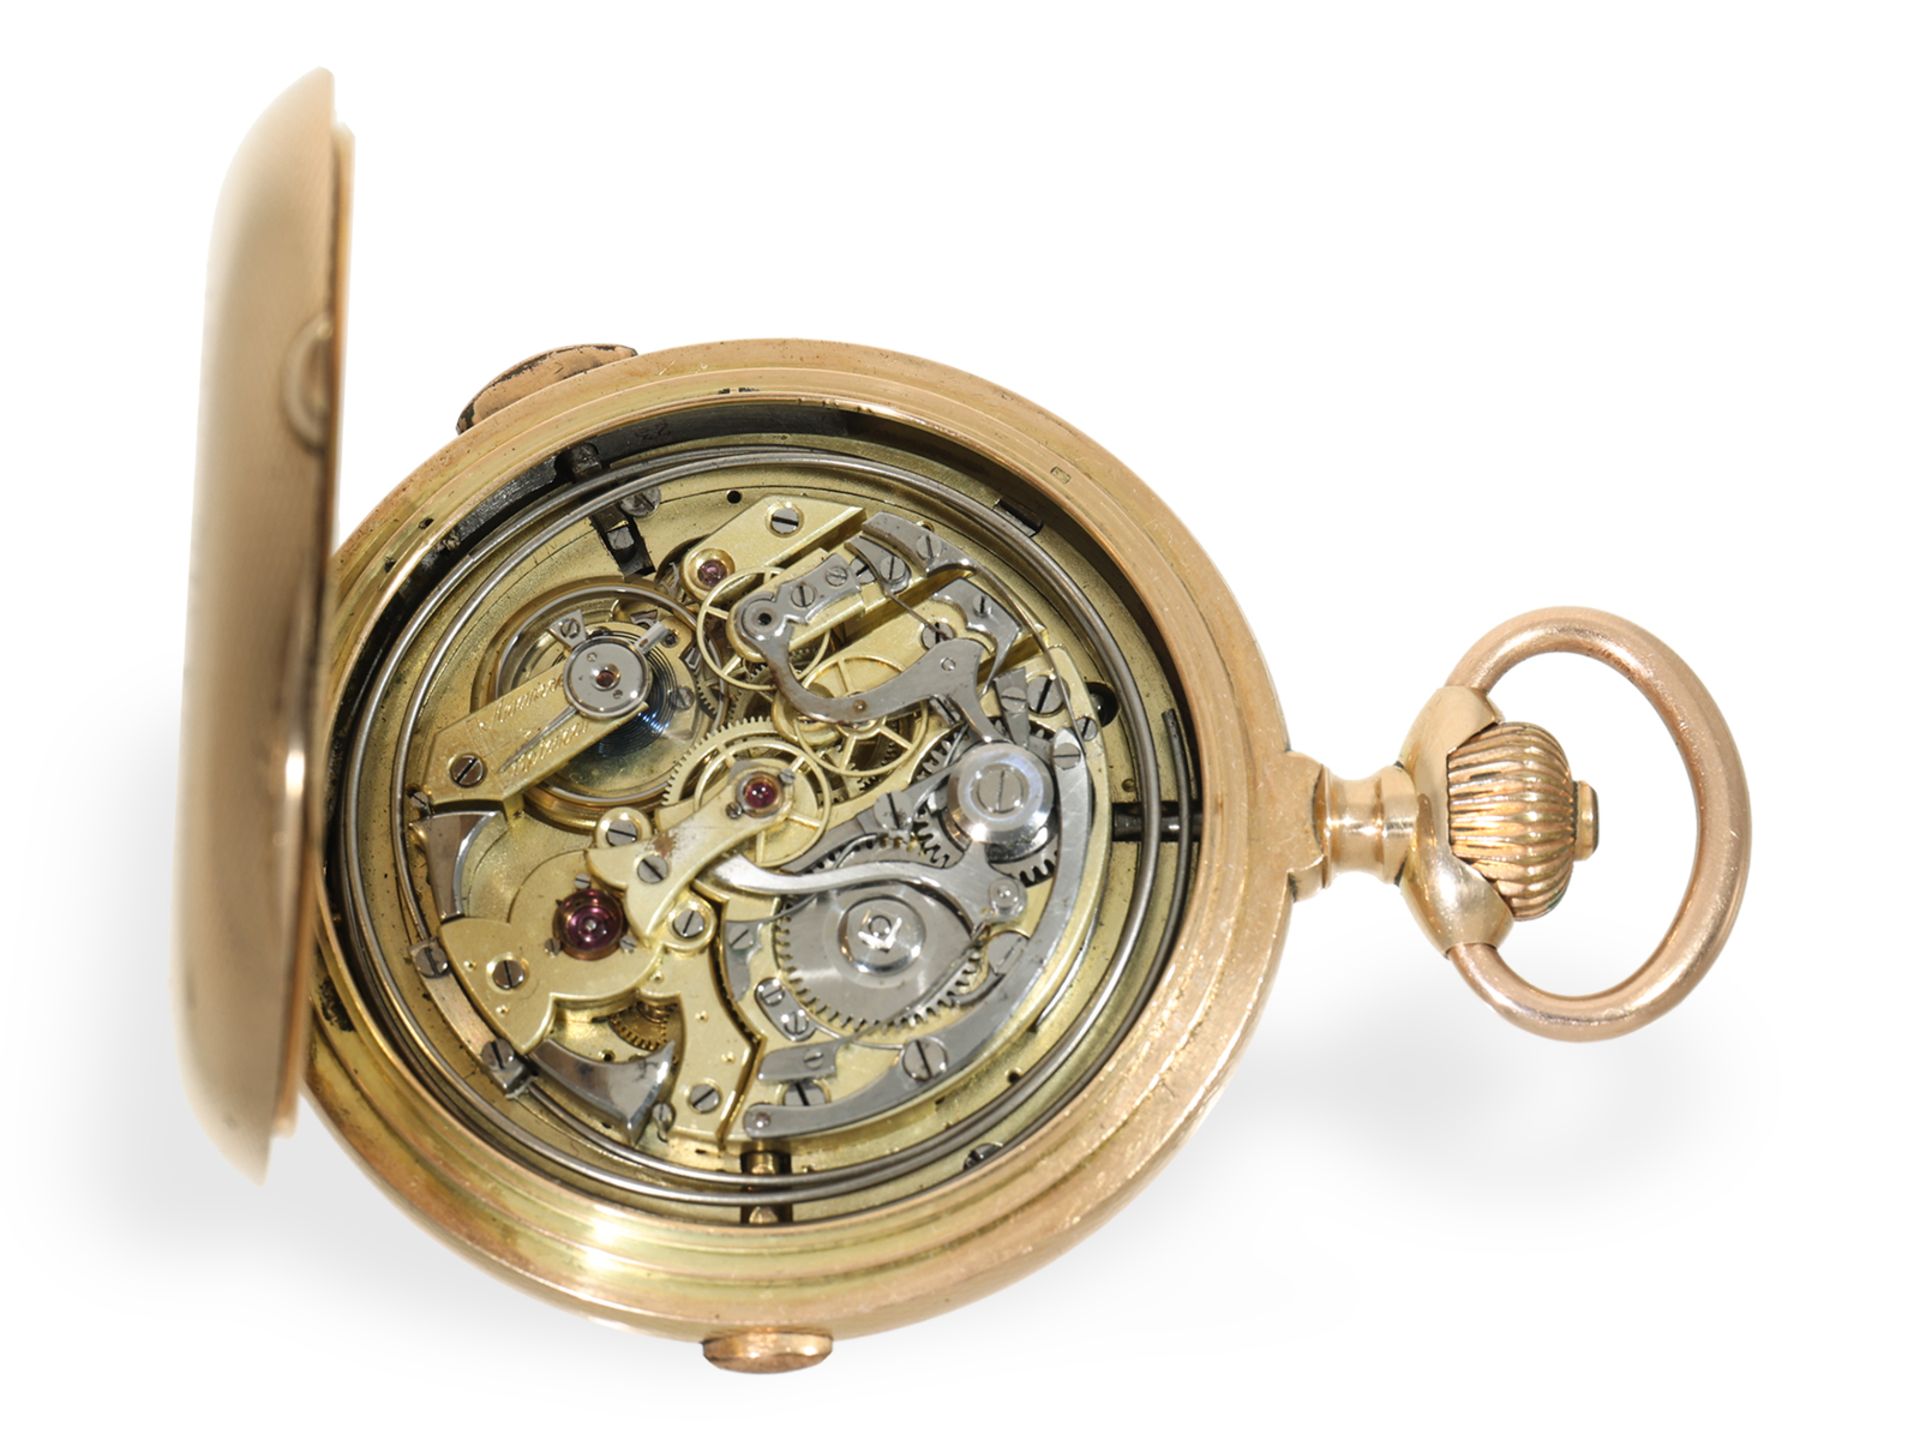 Taschenuhr: beeindruckende Goldsavonnette (62mm/180g) mit Chronograph und Repetition, um 1900 - Bild 5 aus 6